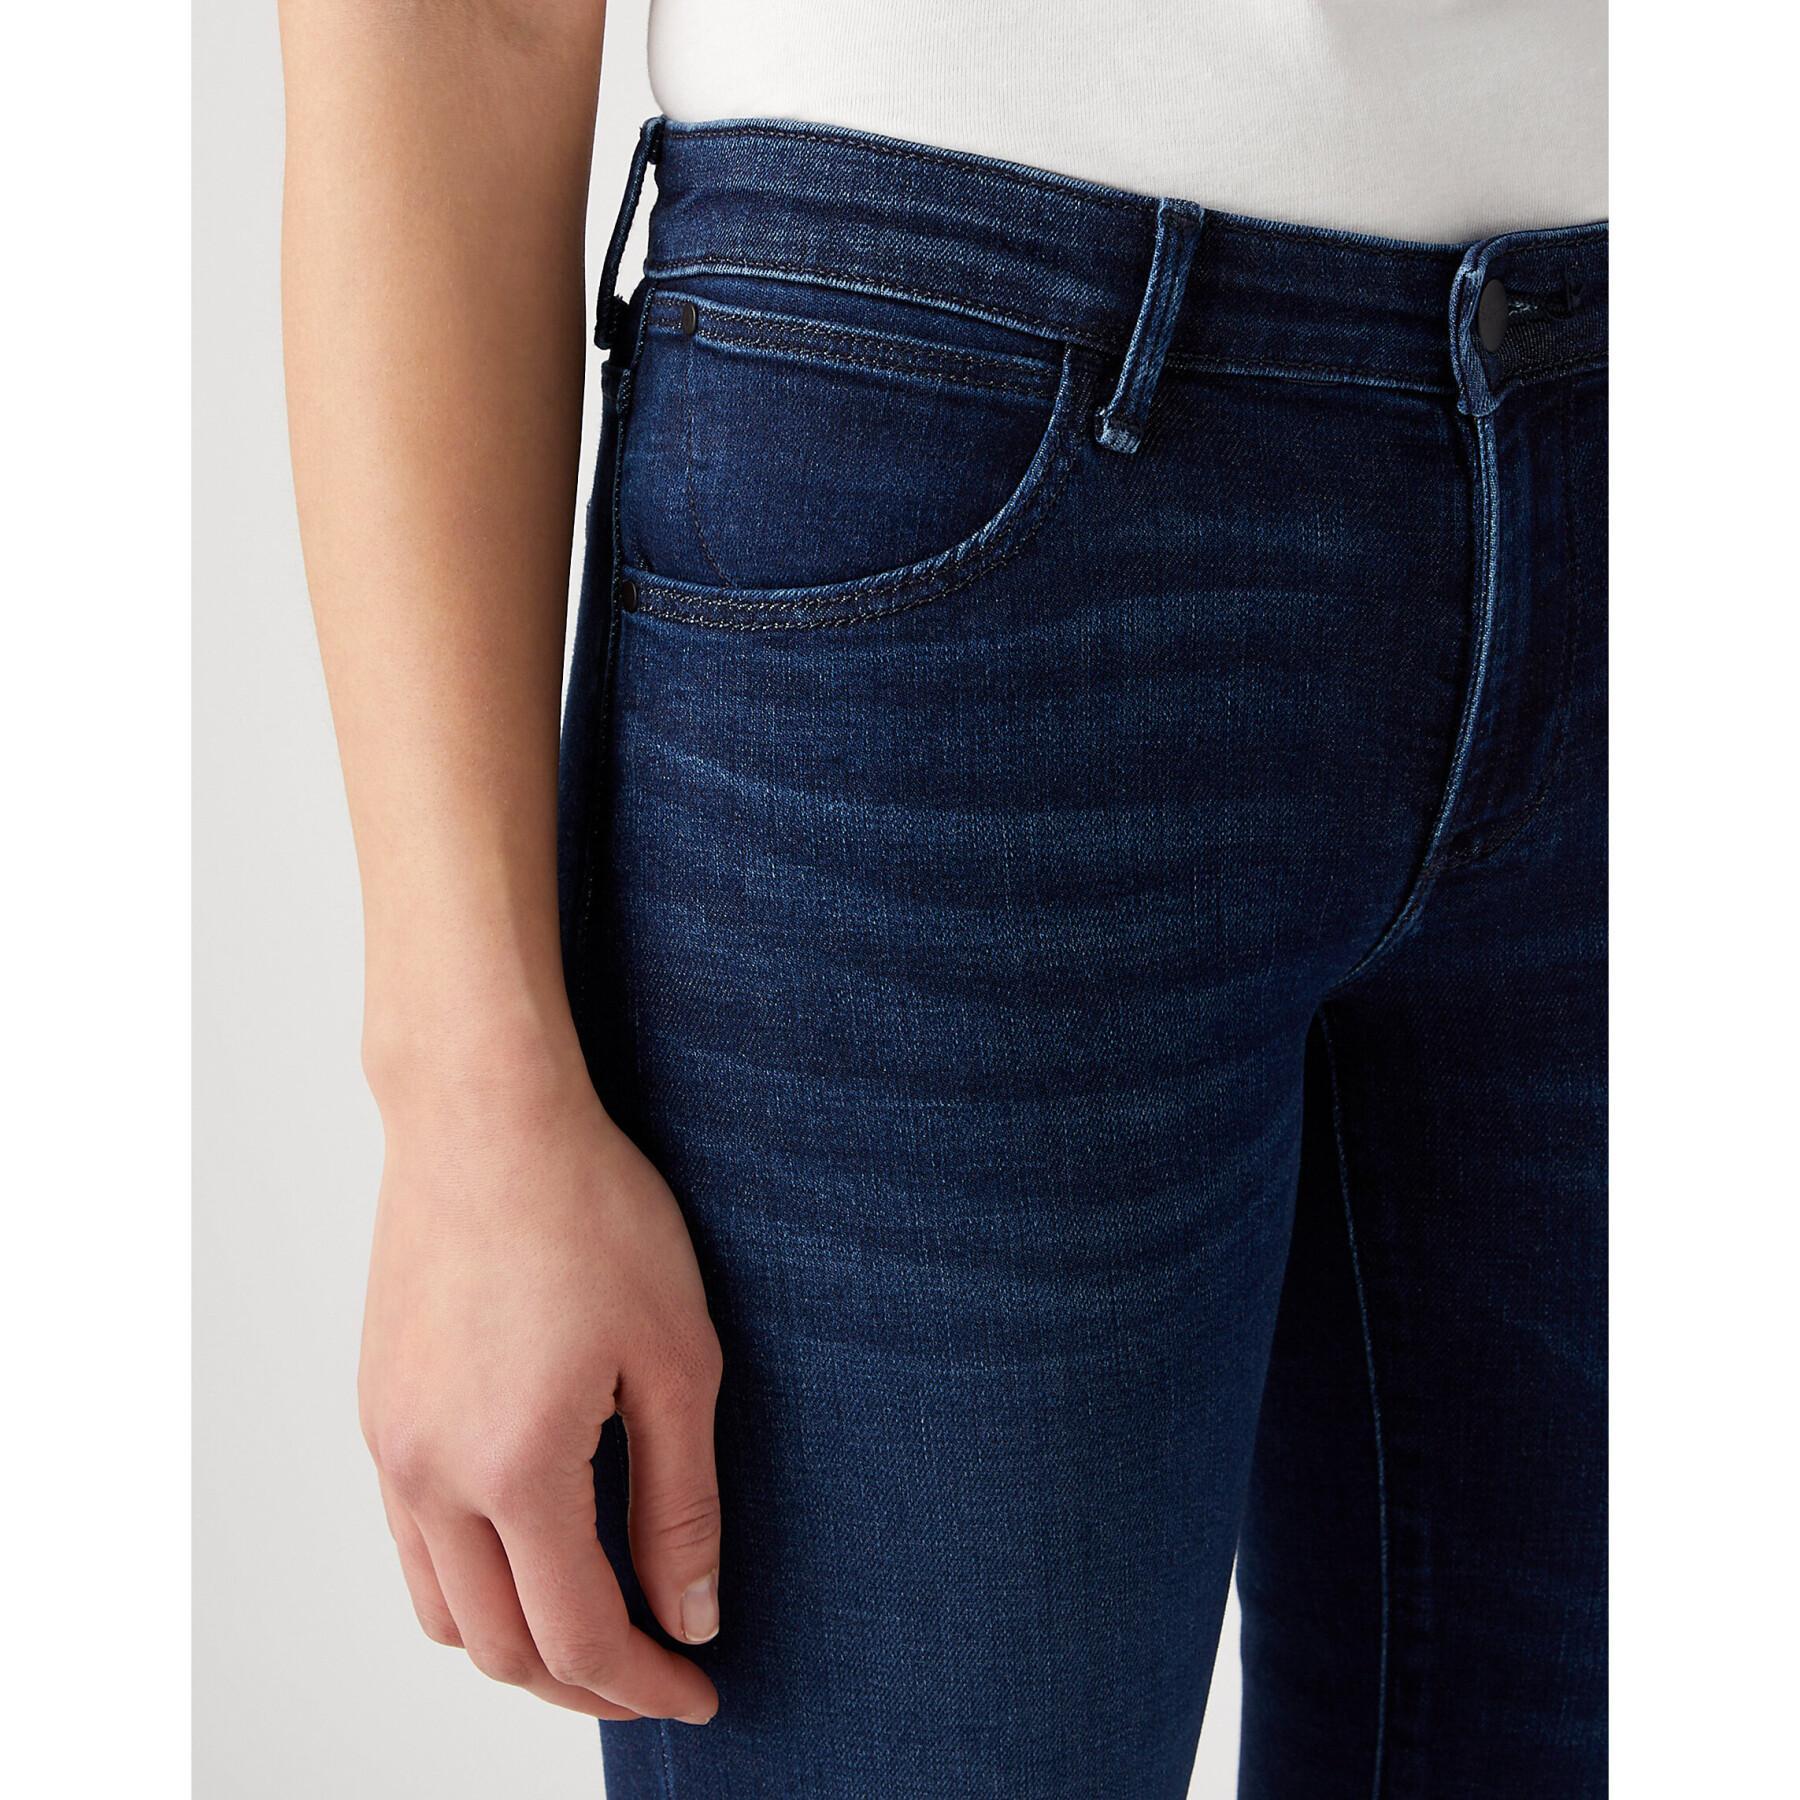 Women's jeans Wrangler